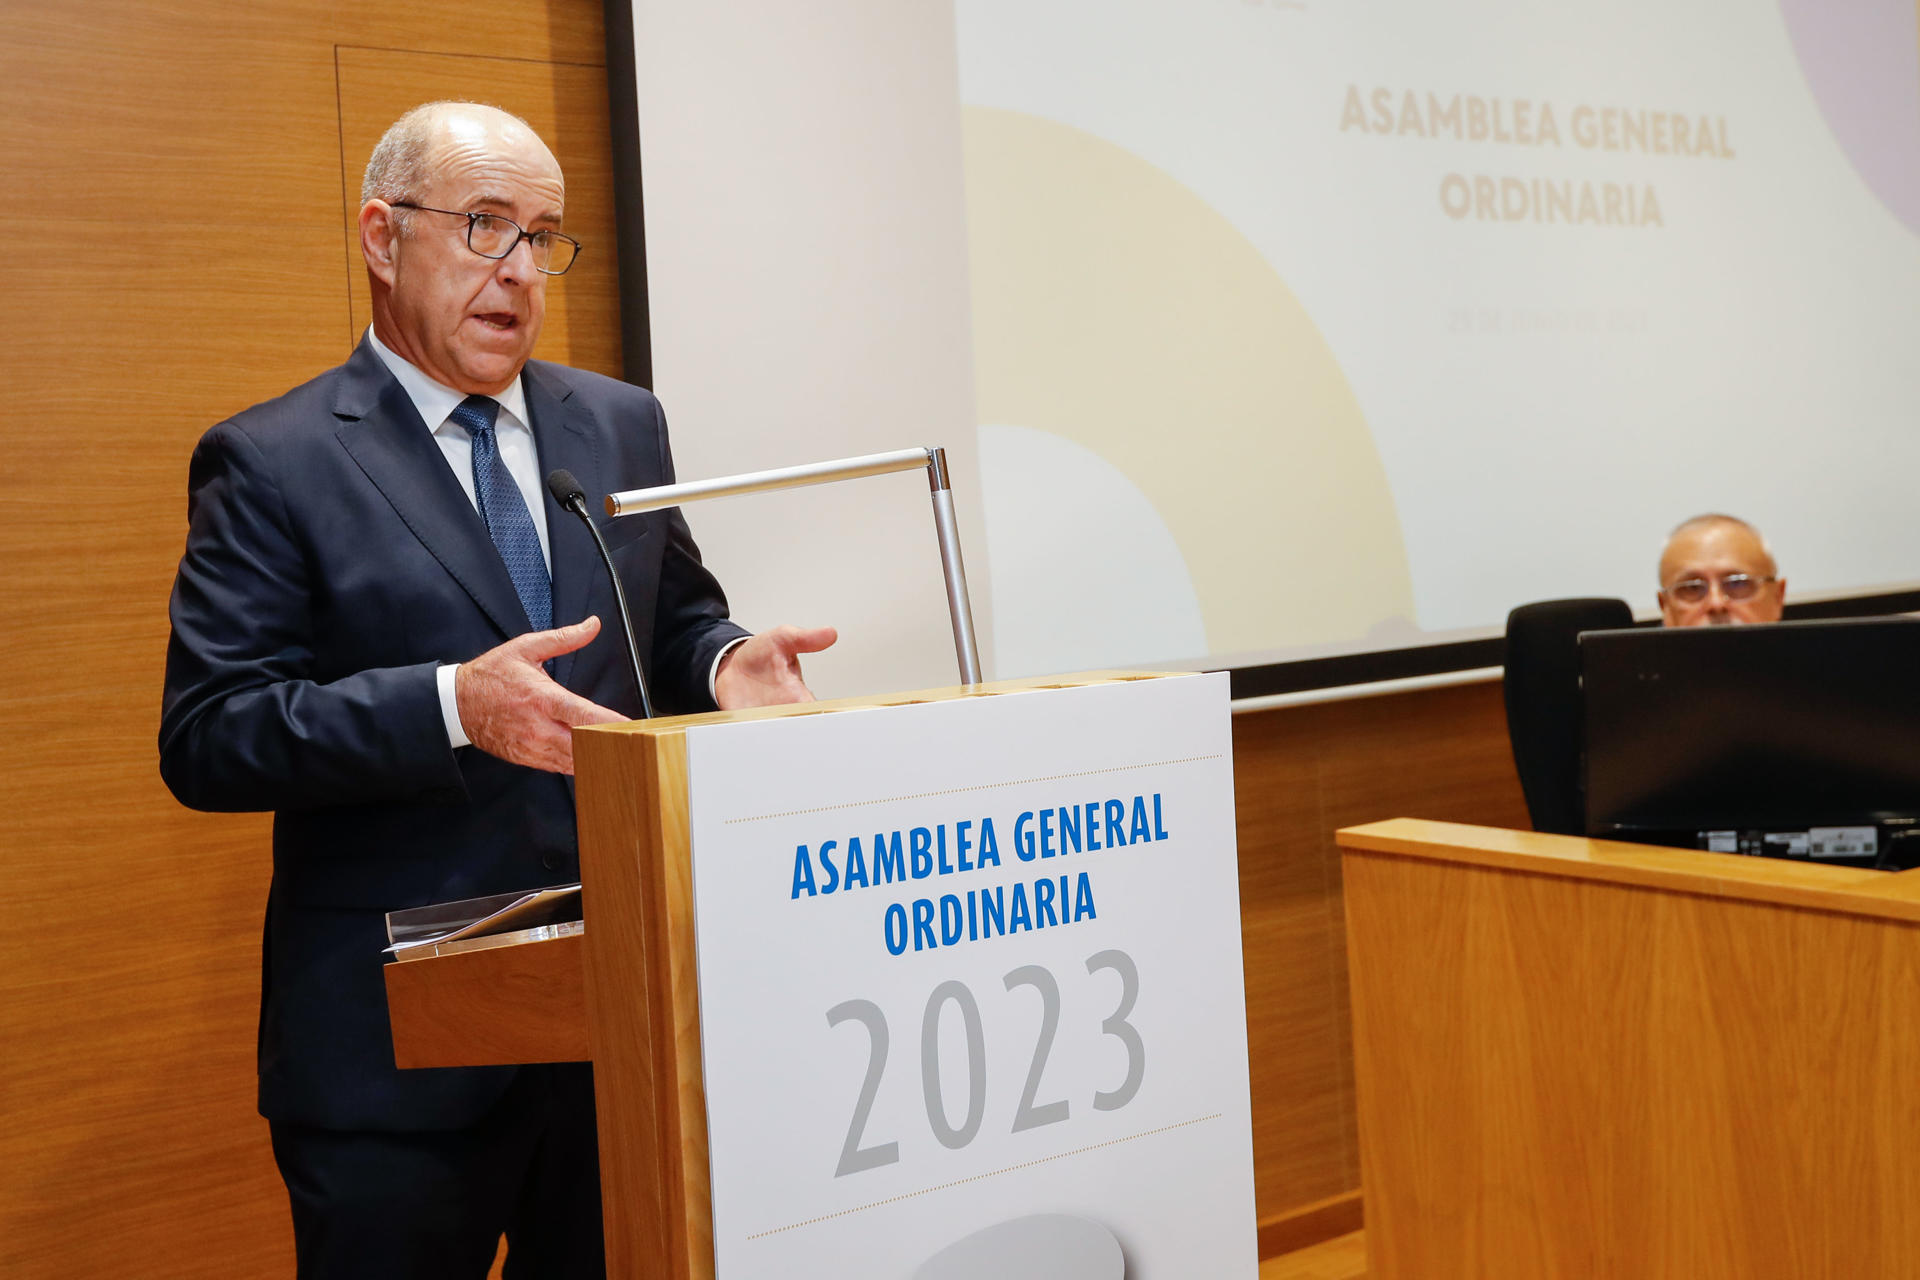 La Confederación Canaria de Empresarios celebró este jueves su asamblea anual. En la imagen, su presidente, Pedro Ortega, durante su intervención. EFE/ Elvira Urquijo A.